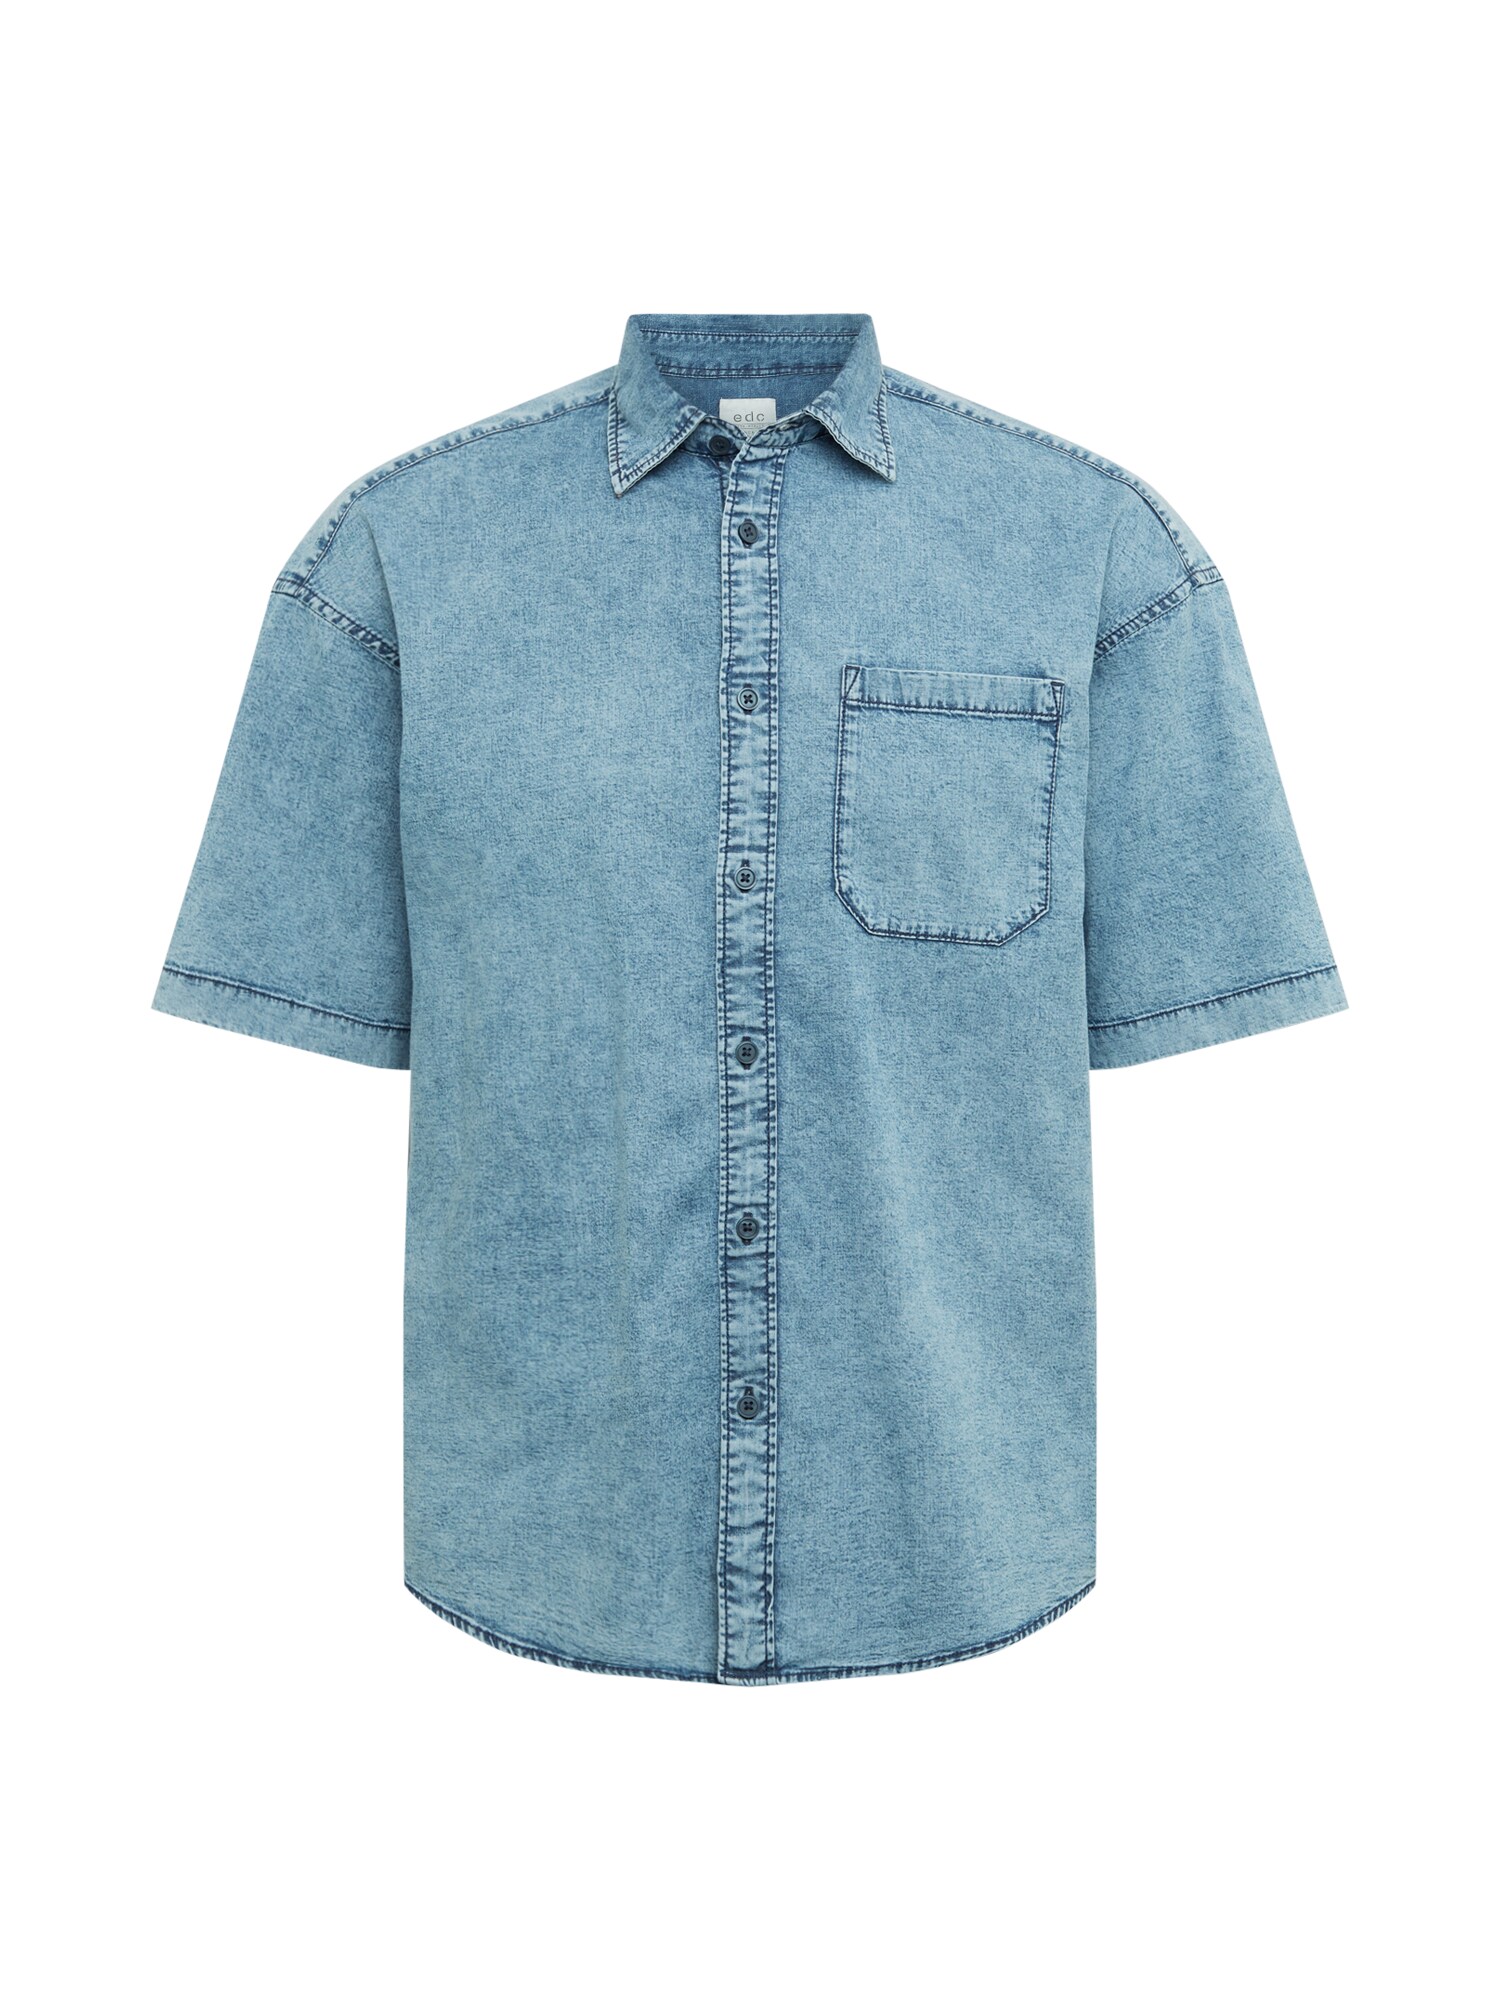 EDC BY ESPRIT Dalykiniai marškiniai  tamsiai (džinso) mėlyna